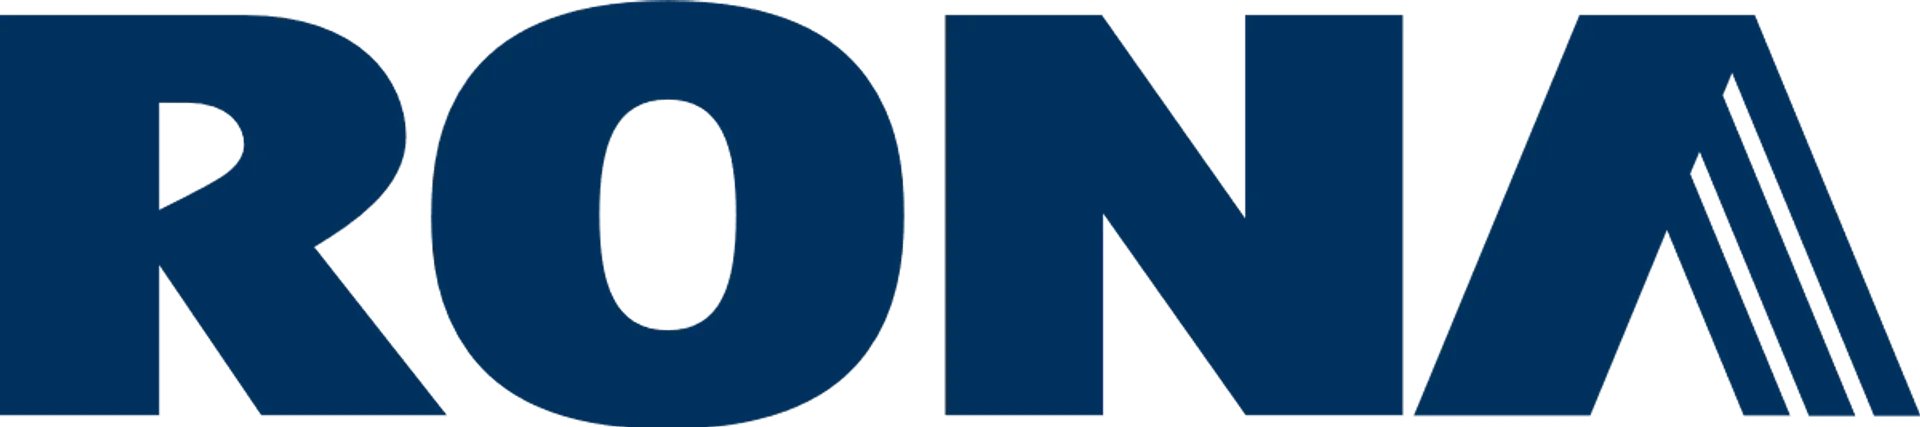 RONA logo de circulaire